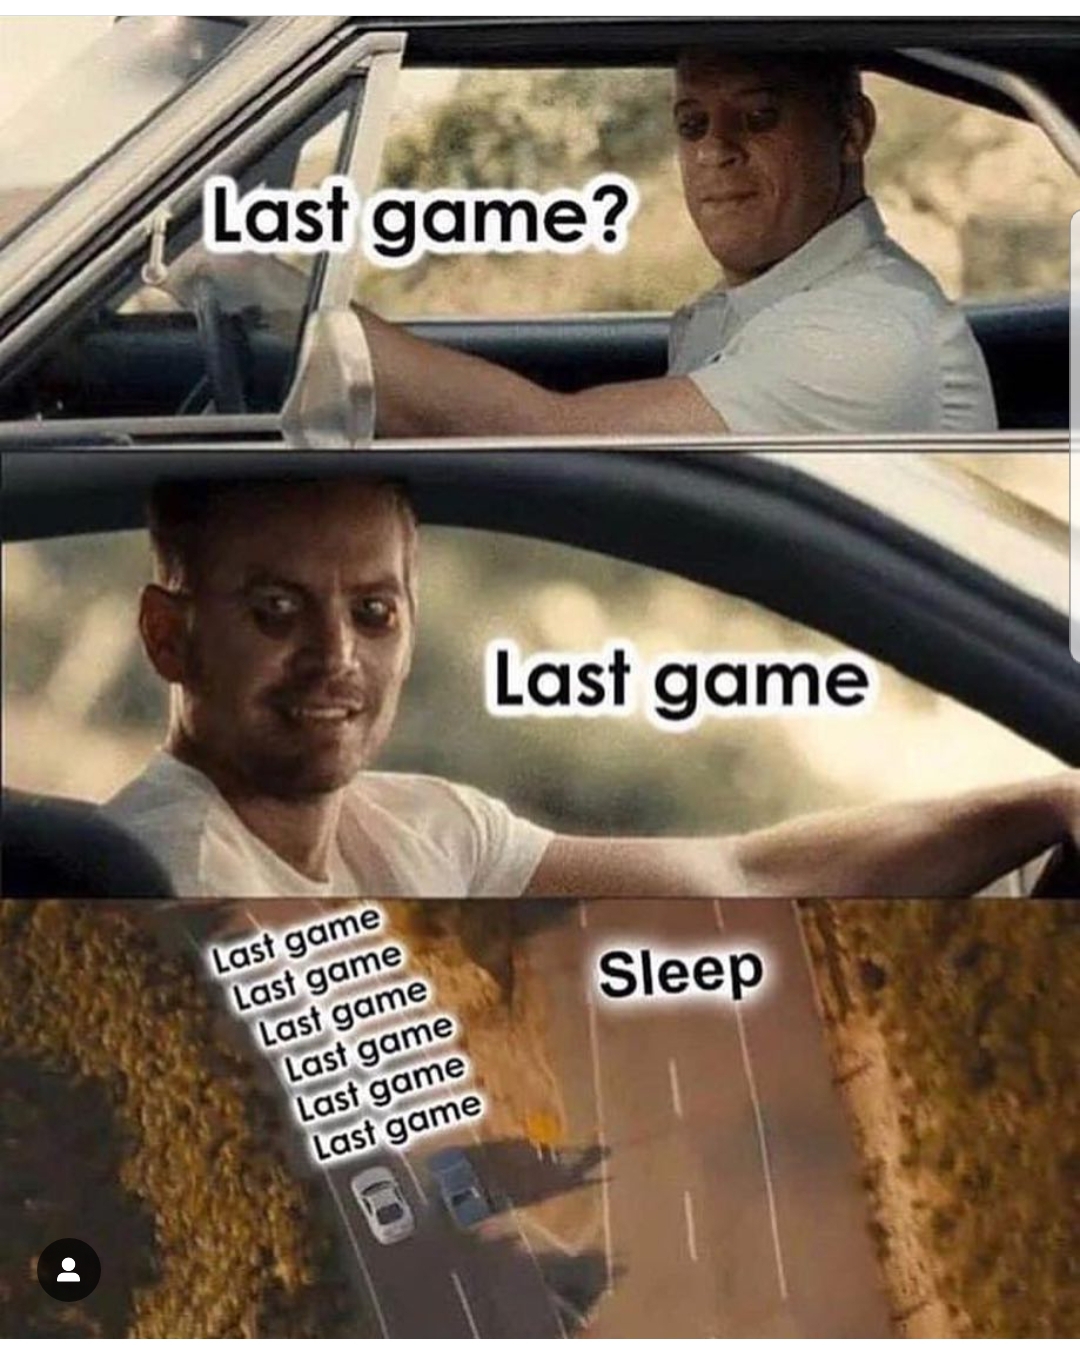 memes - meme last game - Last game? Last game Last game Sleep Last game Last game Last game Last game Last game Last game